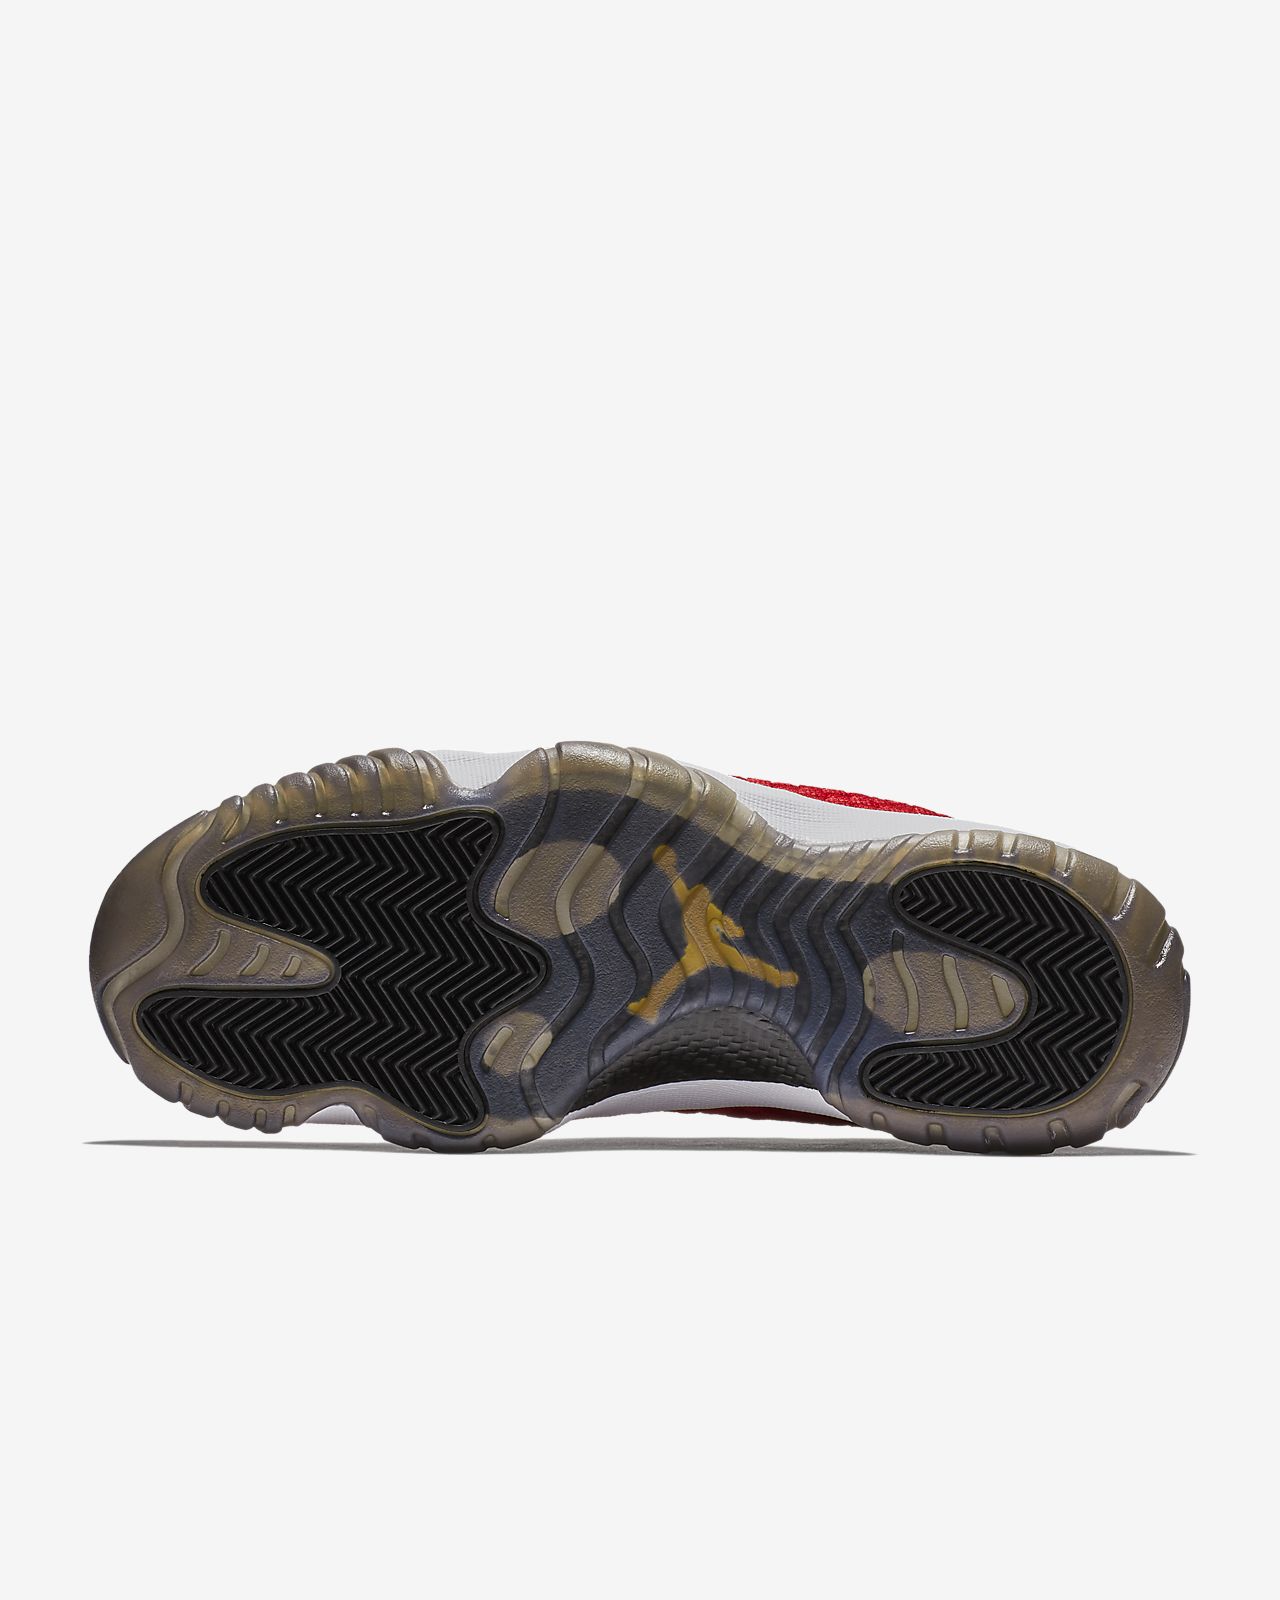 Mens Air Jordan Comfort Max 11 All Air Cushion Black Re shoes